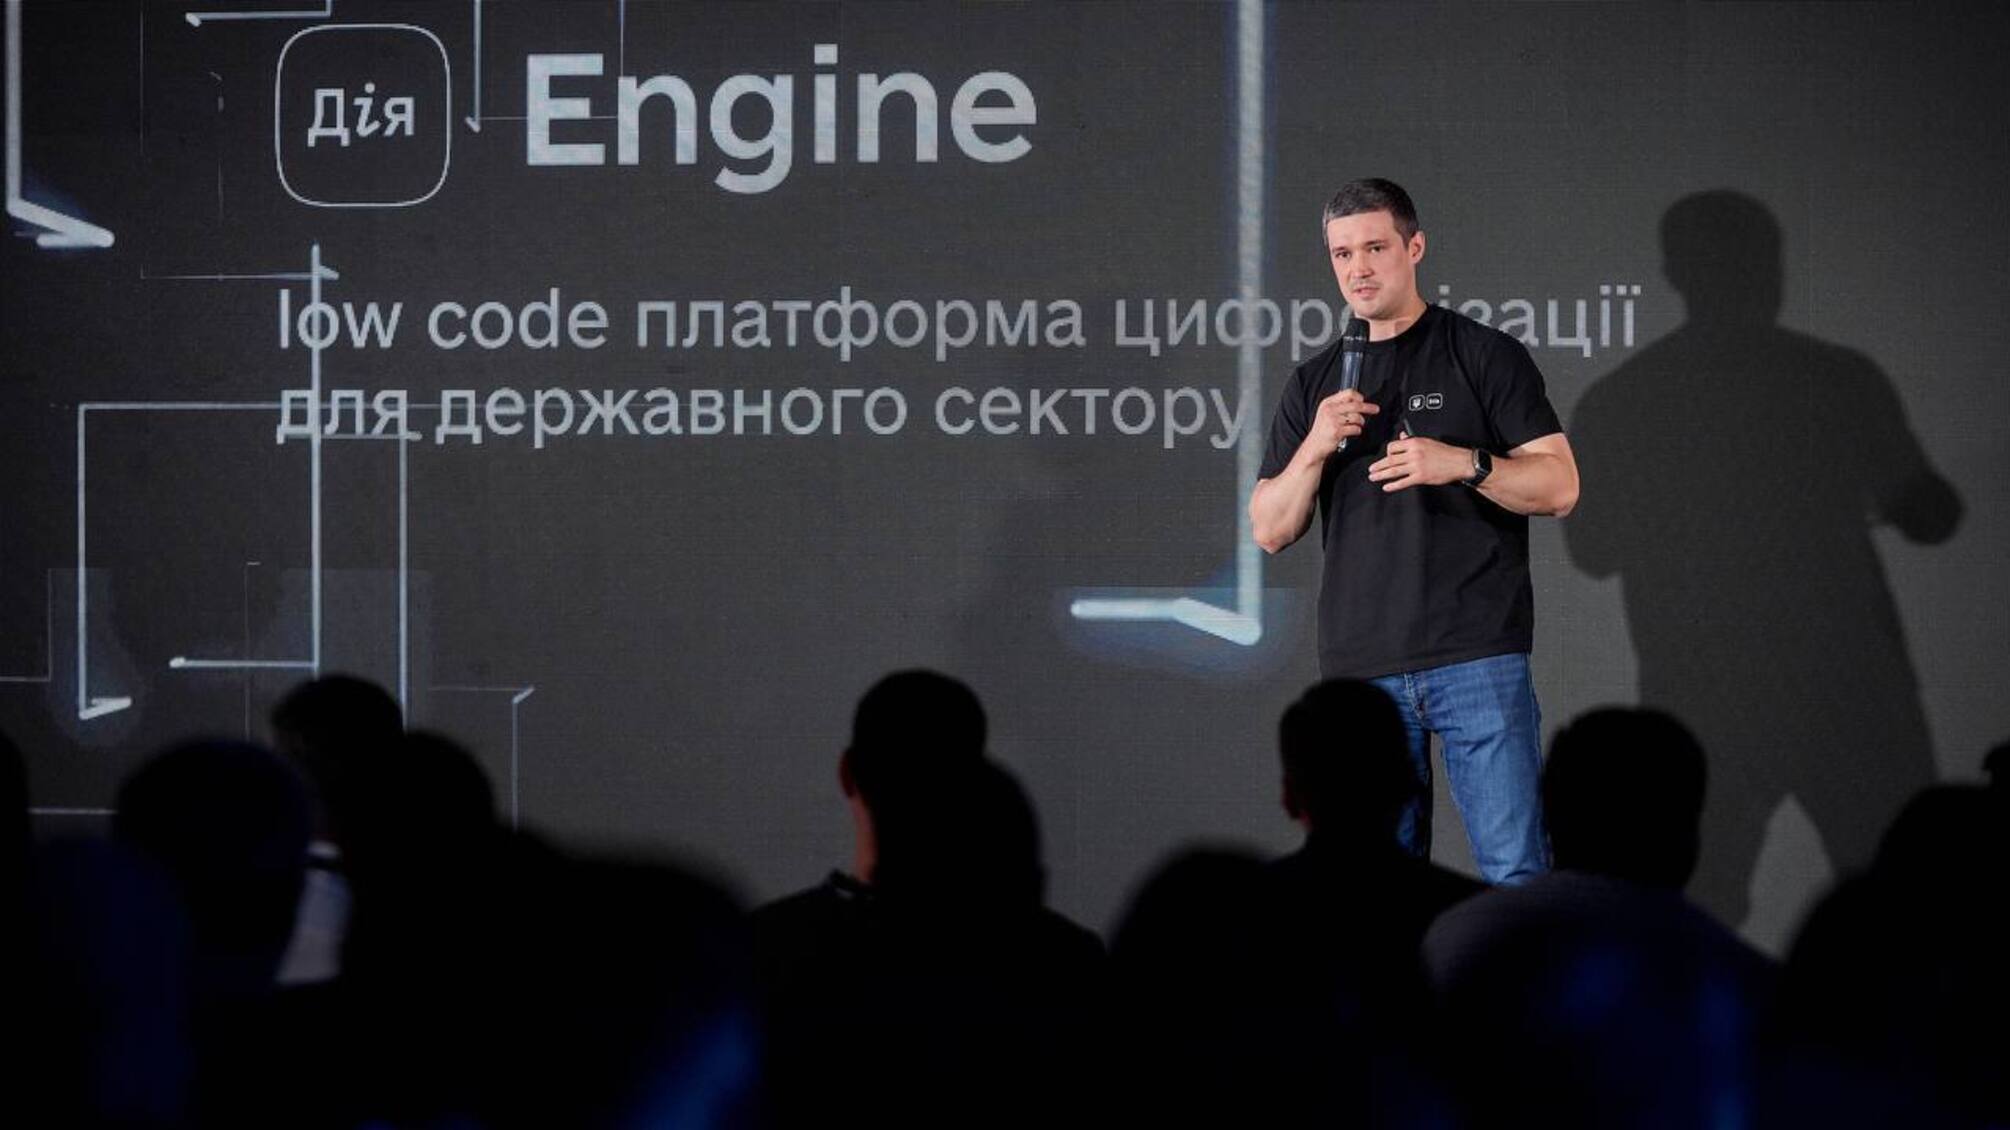 Розвиток цифрової держави: Михайло Федоров розповів про нову платформу 'Дія.Engine'